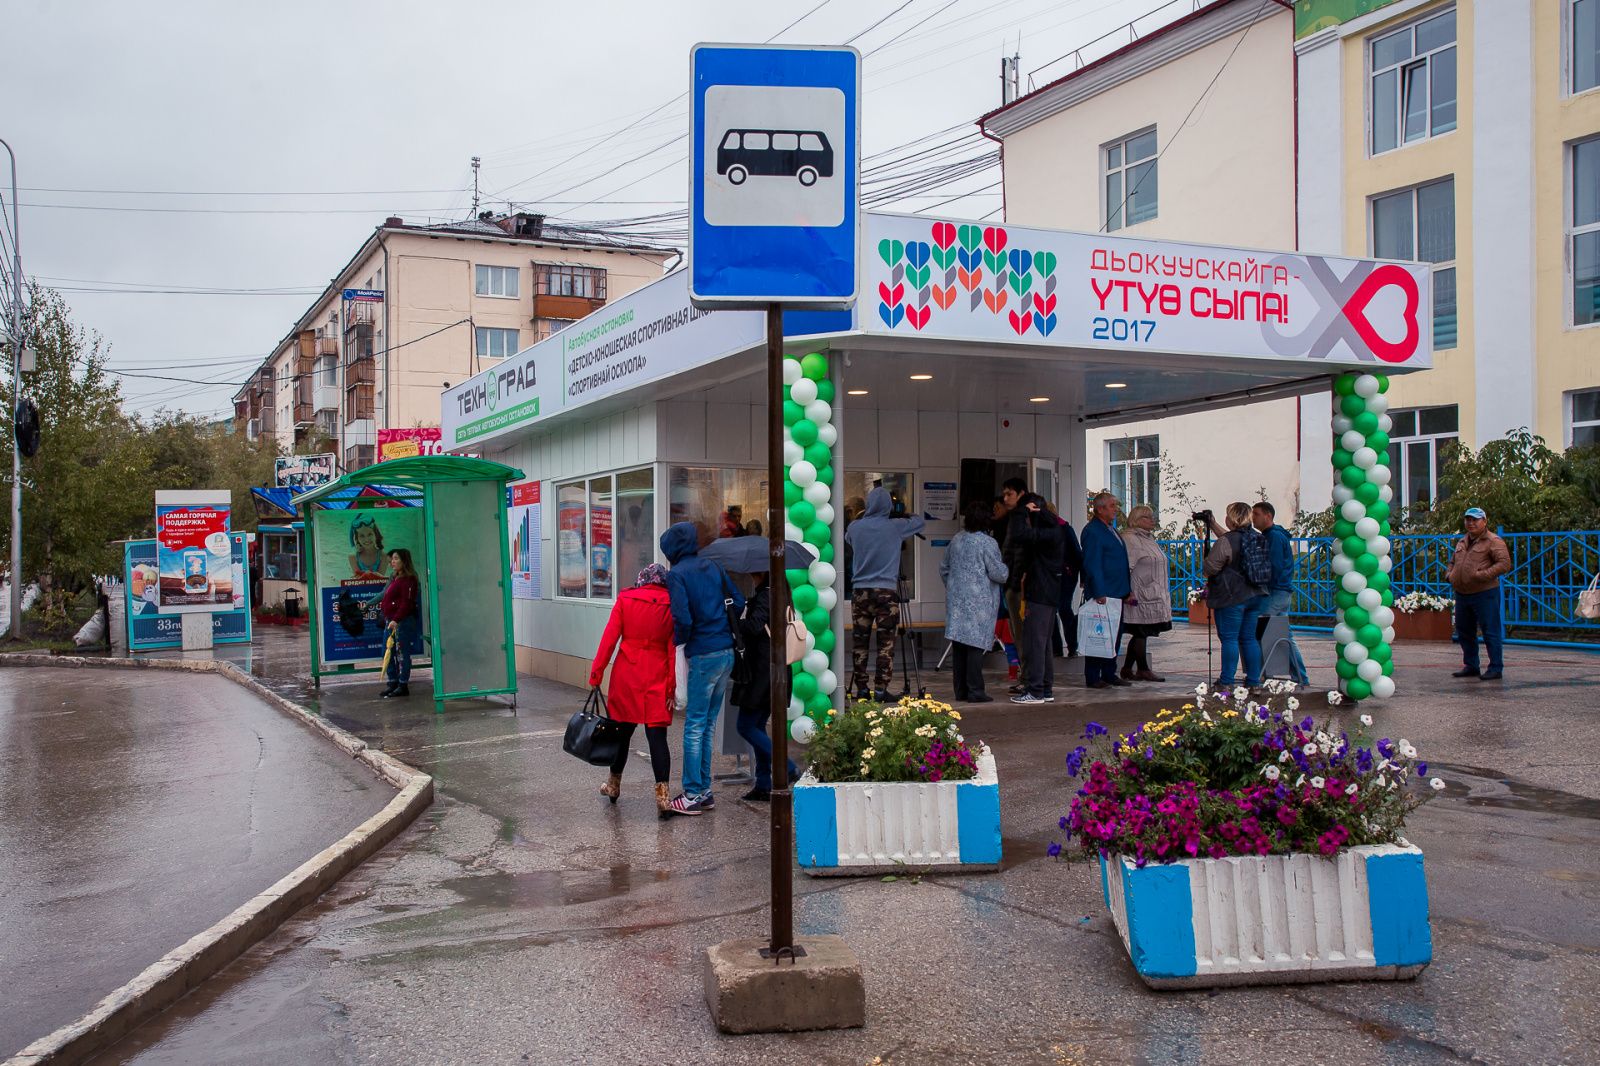 Первые в России: лучшие муниципальные практики Якутска